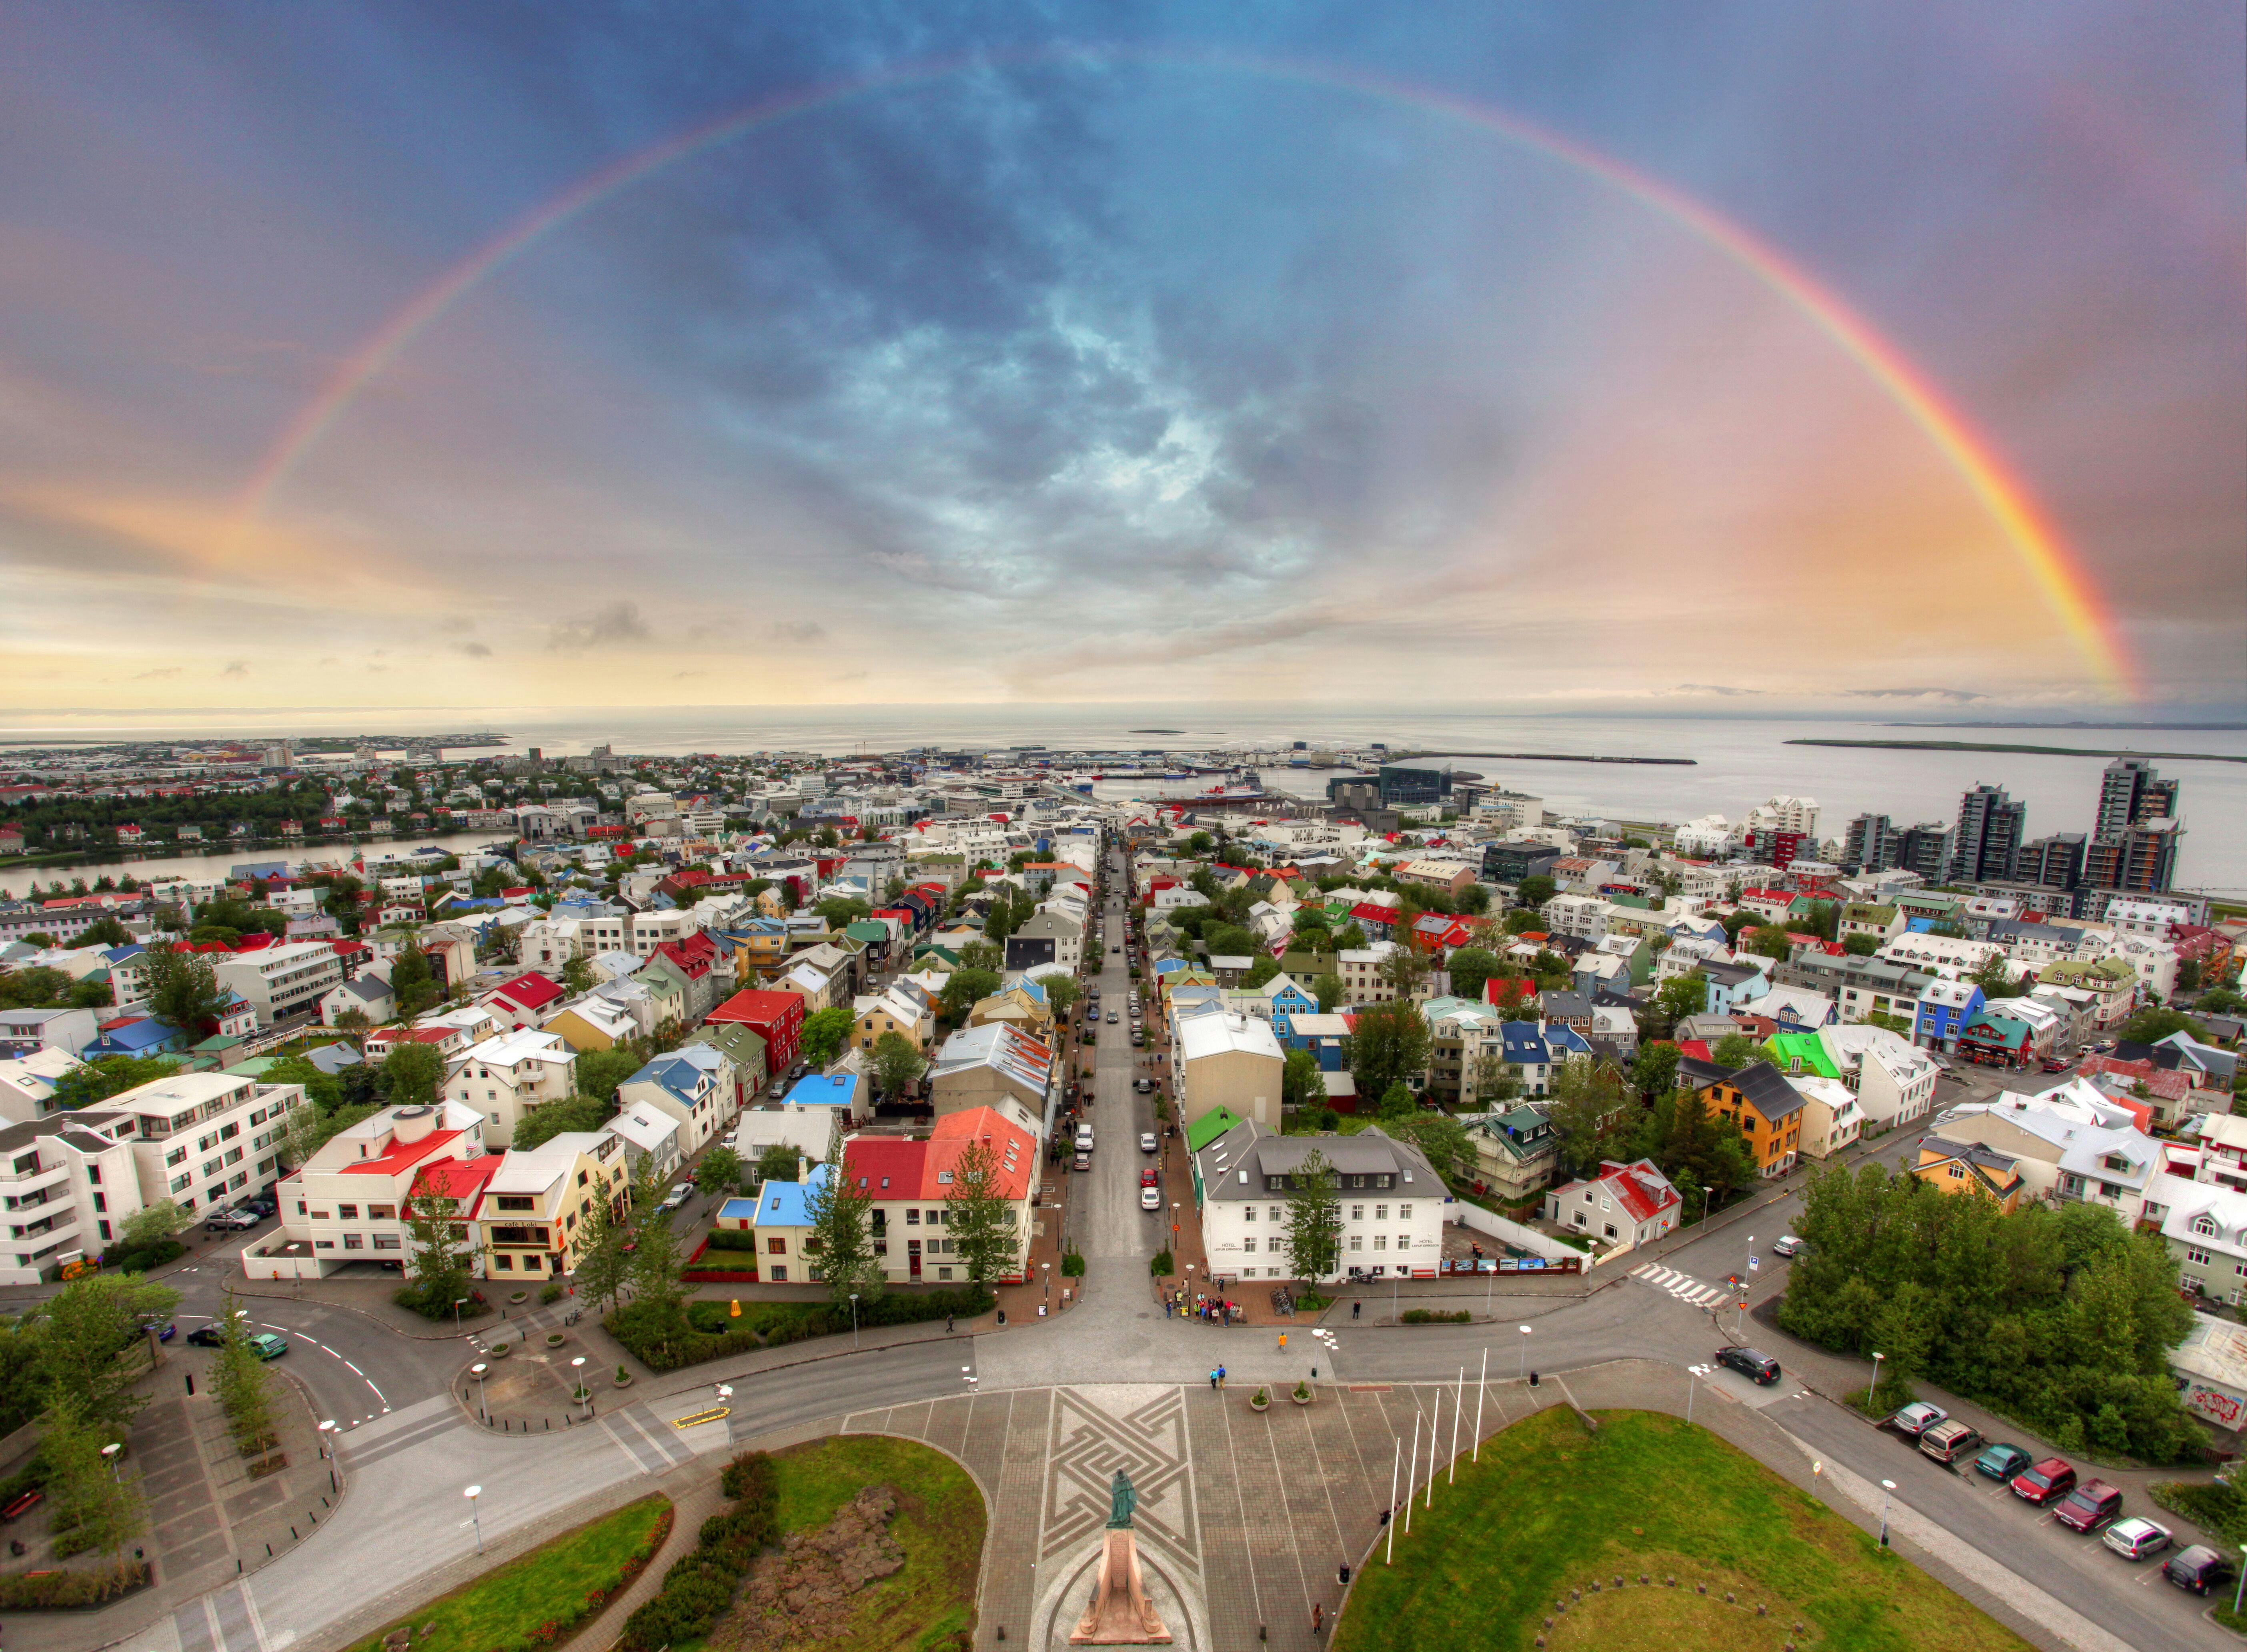 Un espectacular arcoíris cruza los cielos sobre los coloridos tejados de la ciudad de Reikiavik, visto desde la iglesia de Hallgrímskirkja.